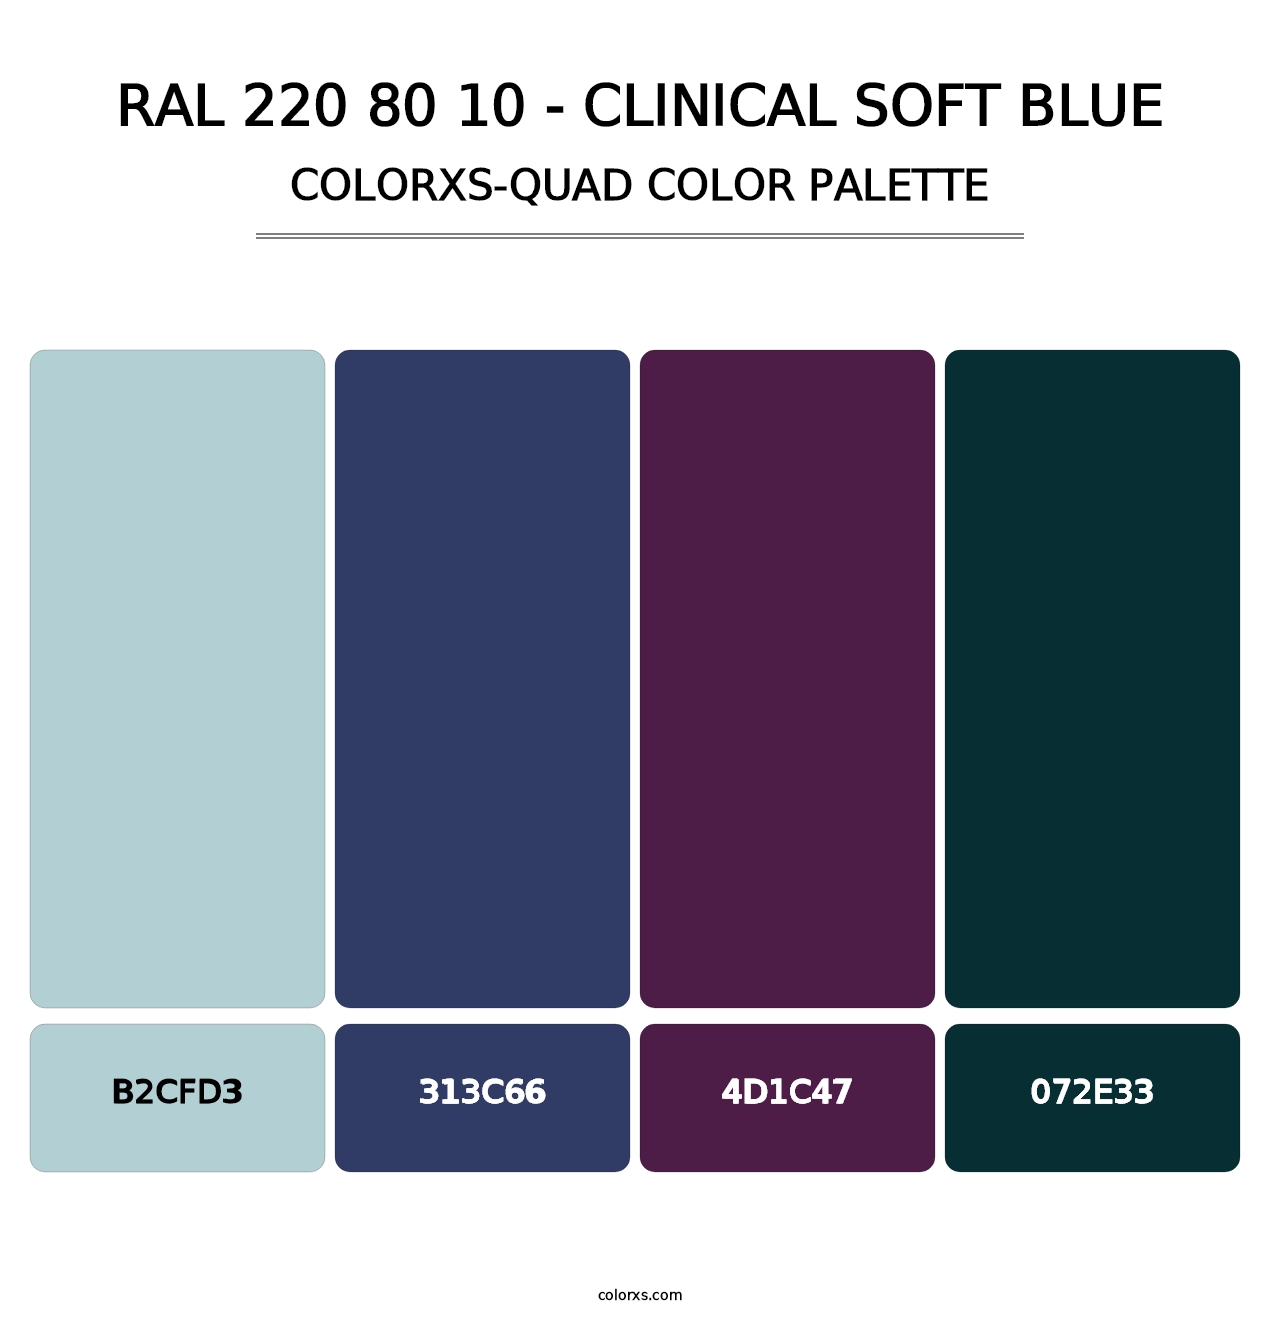 RAL 220 80 10 - Clinical Soft Blue - Colorxs Quad Palette